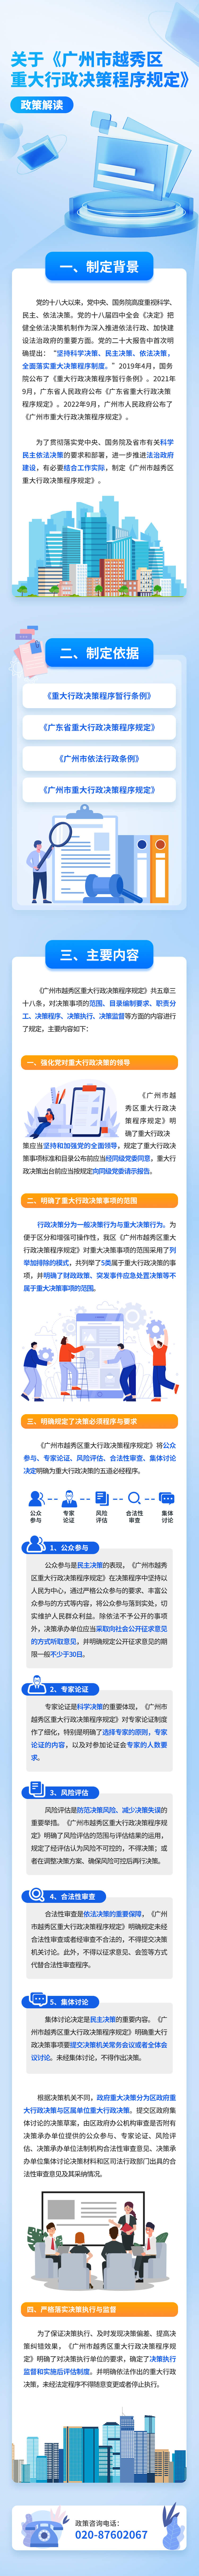 关于《广州市越秀区重大行政决策程序规定》的政策解读-重点内容 (4) (1).jpg